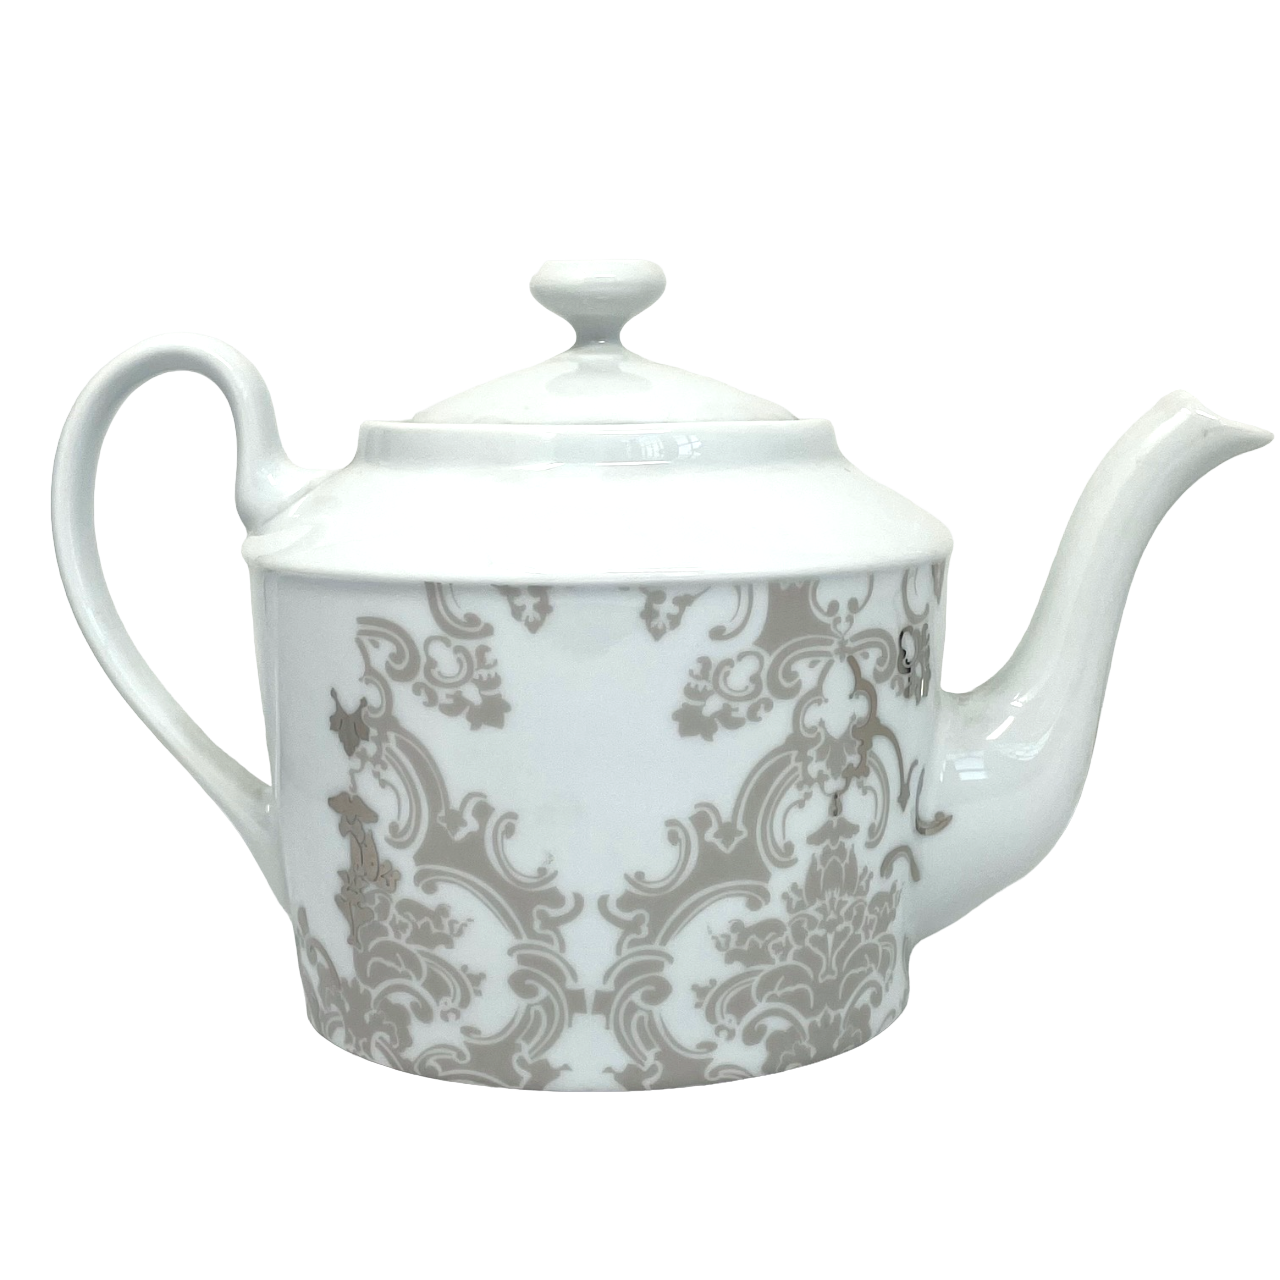 Boudoir - Teapot 1.7 litre